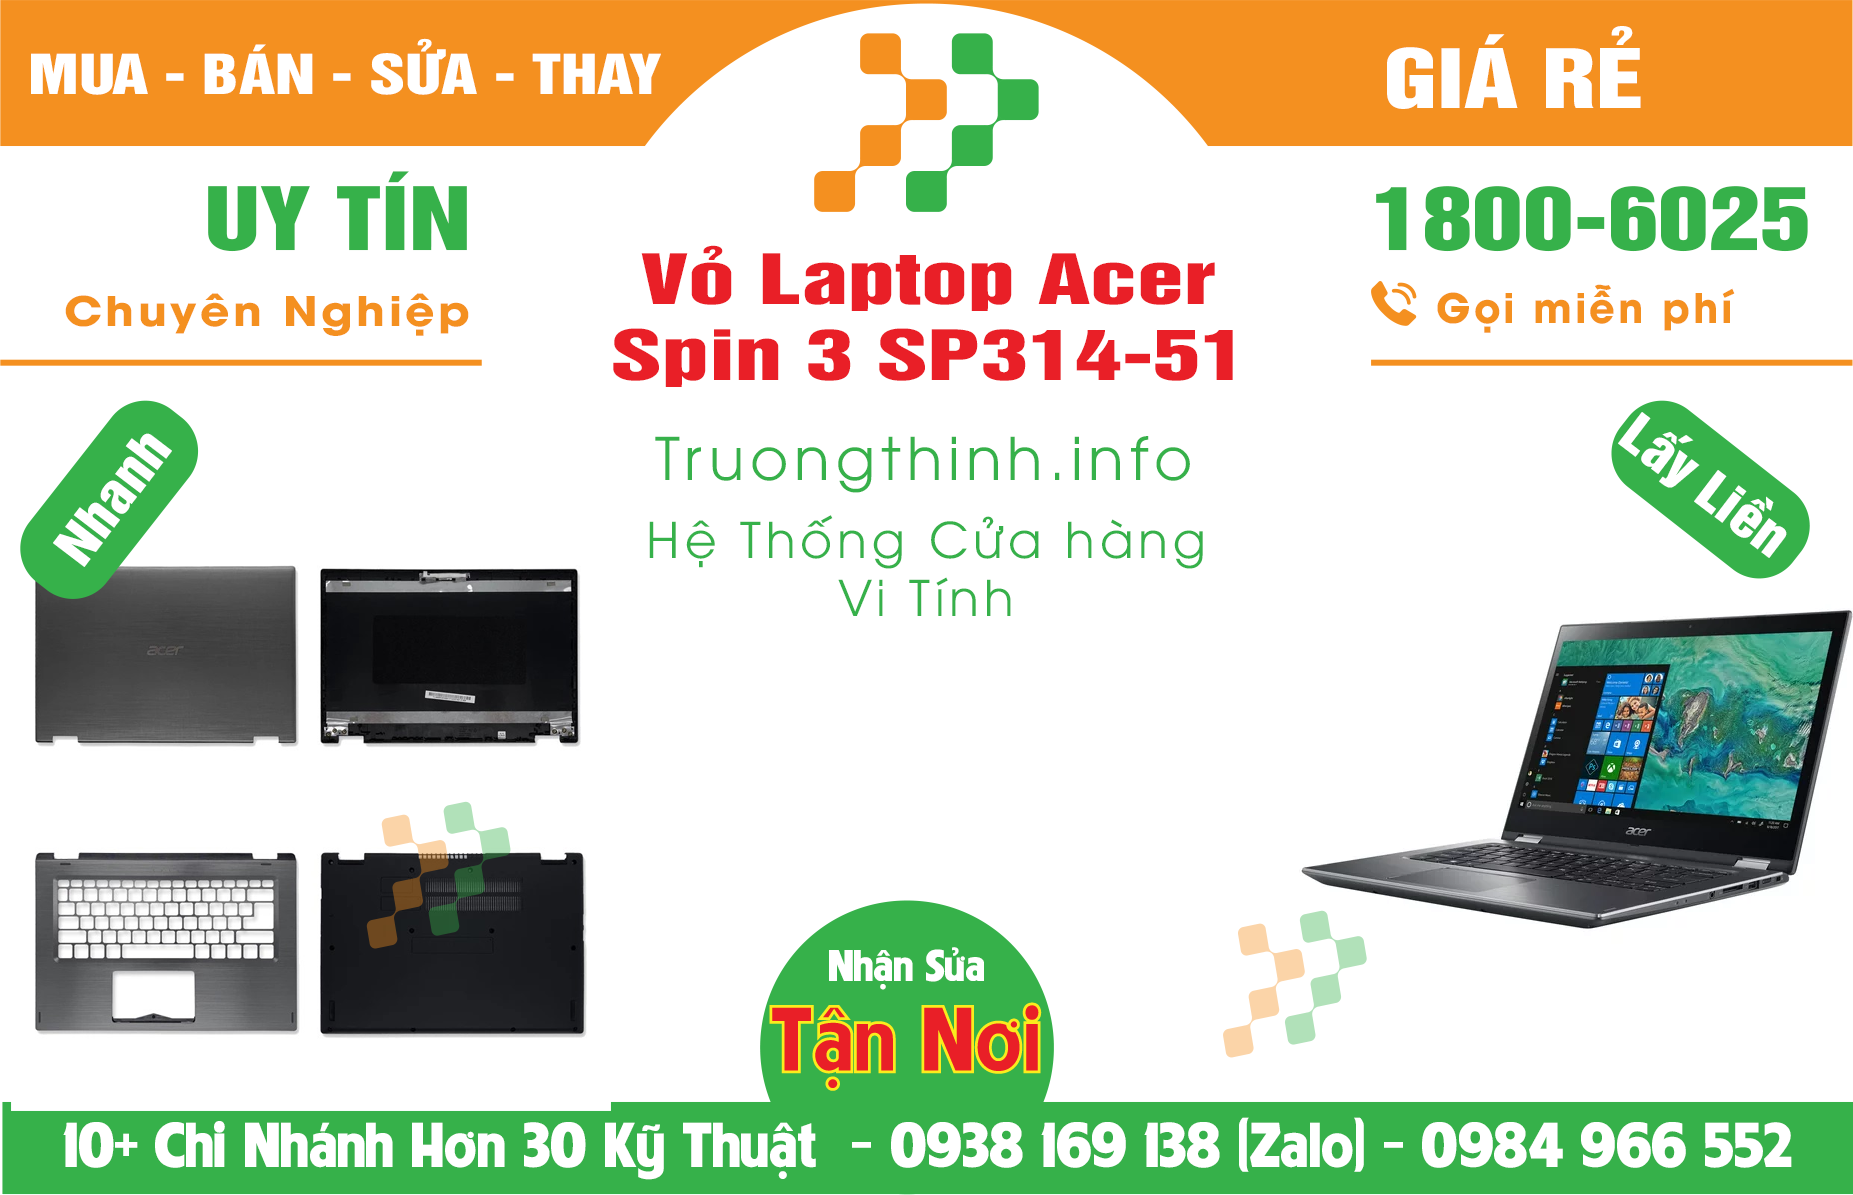 Mua Bán Vỏ Laptop Acer Spin 3 SP314-51 Giá Rẻ | Máy Tính Trường Thịnh Giá Rẻ